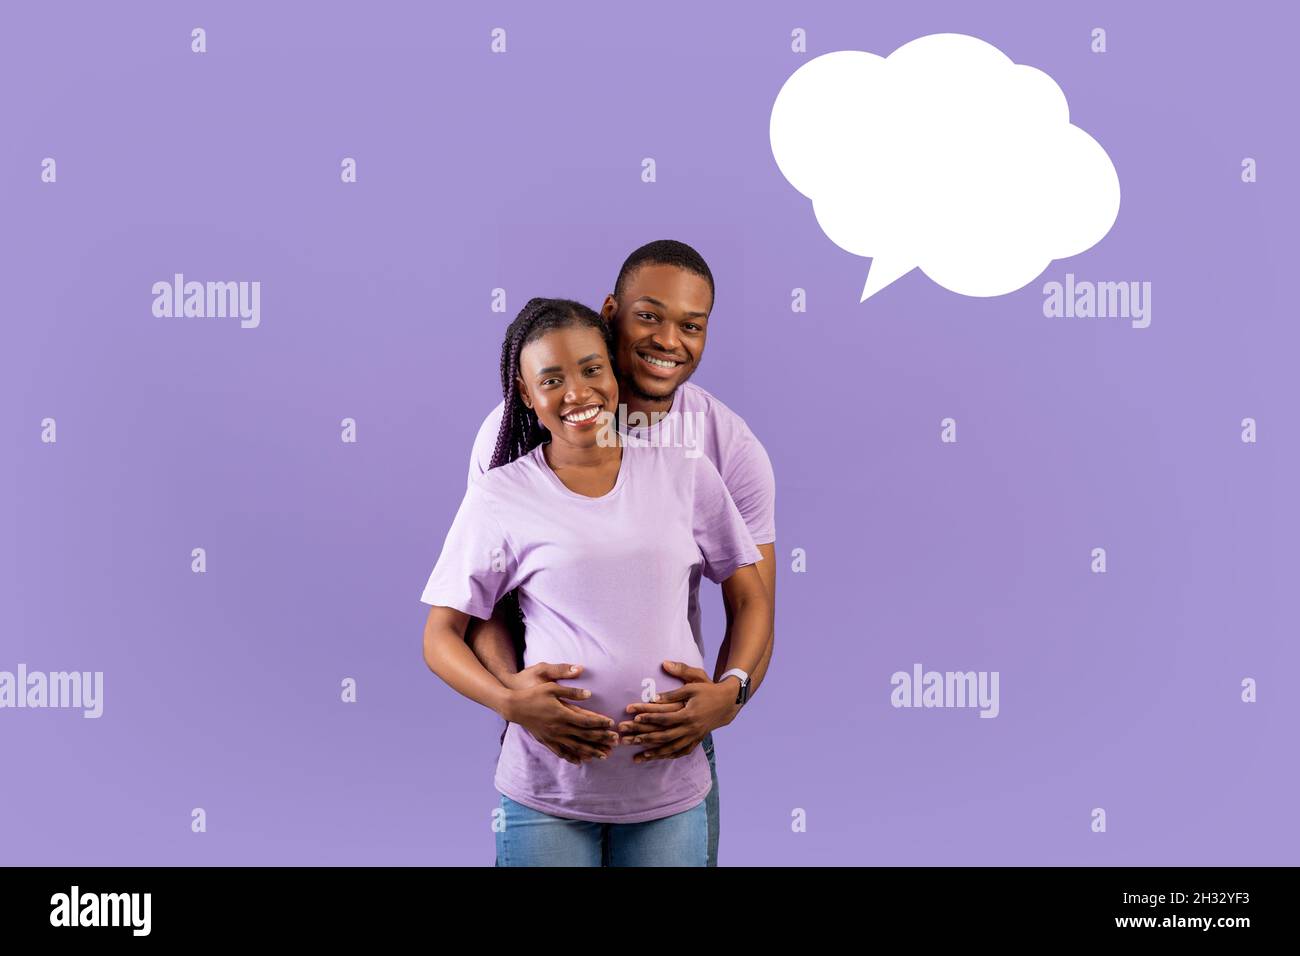 Porträt eines lächelnden schwarzen Mannes, der die Schwangeren von hinten umarmt, ein fröhliches Paar, das über den violetten Hintergrund des Studios steht und an das Baby-na denkt Stockfoto